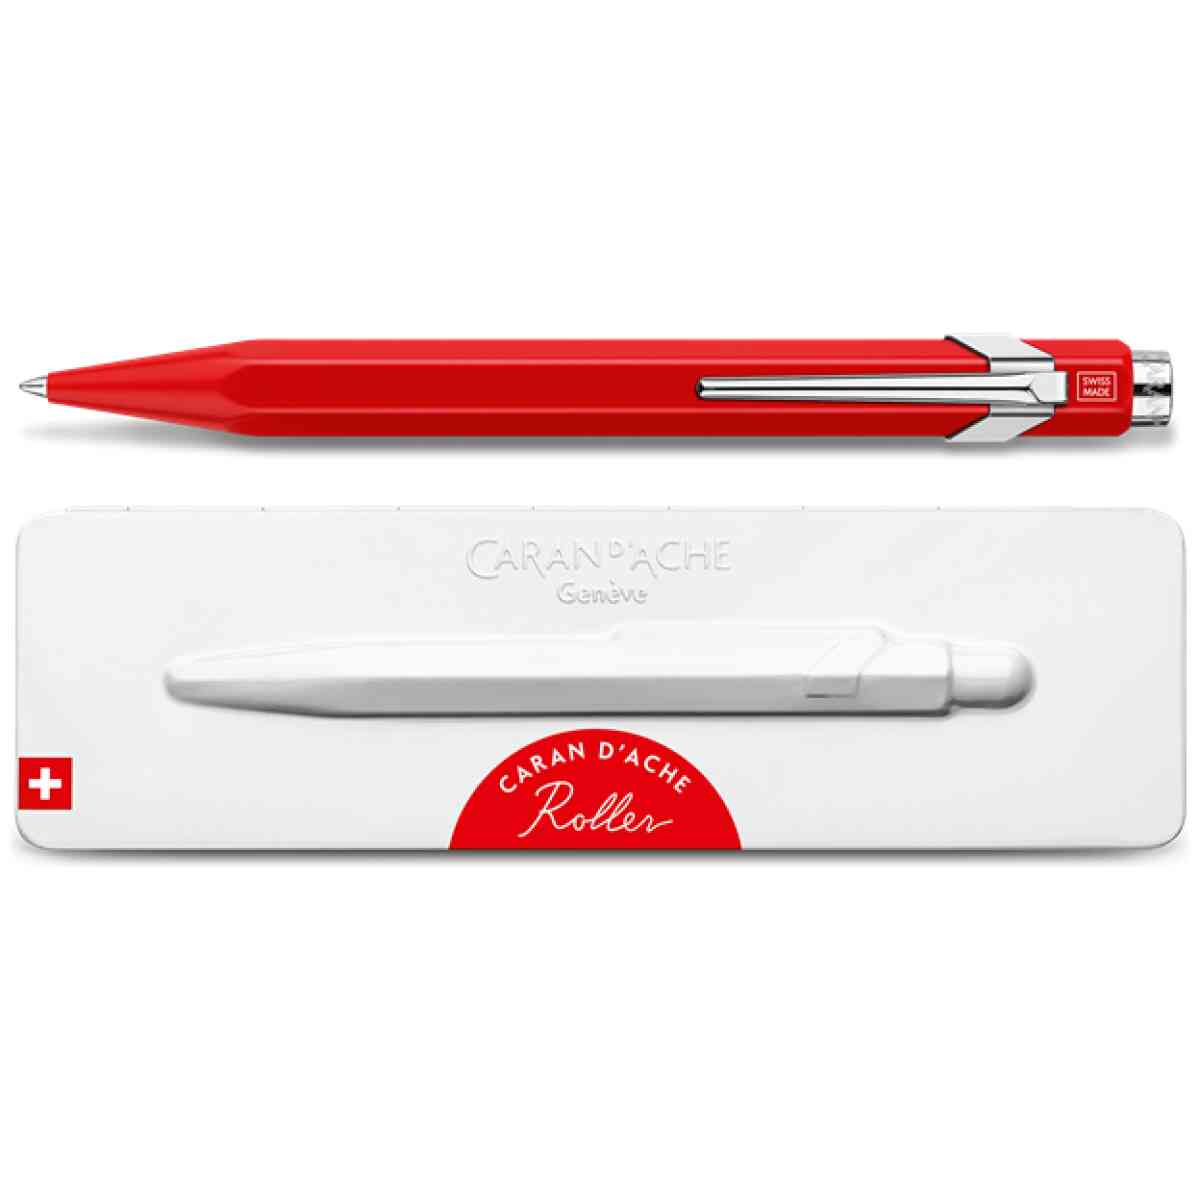 e stylo roller 849 vernis rouge avec etui caran d ache detail0 0